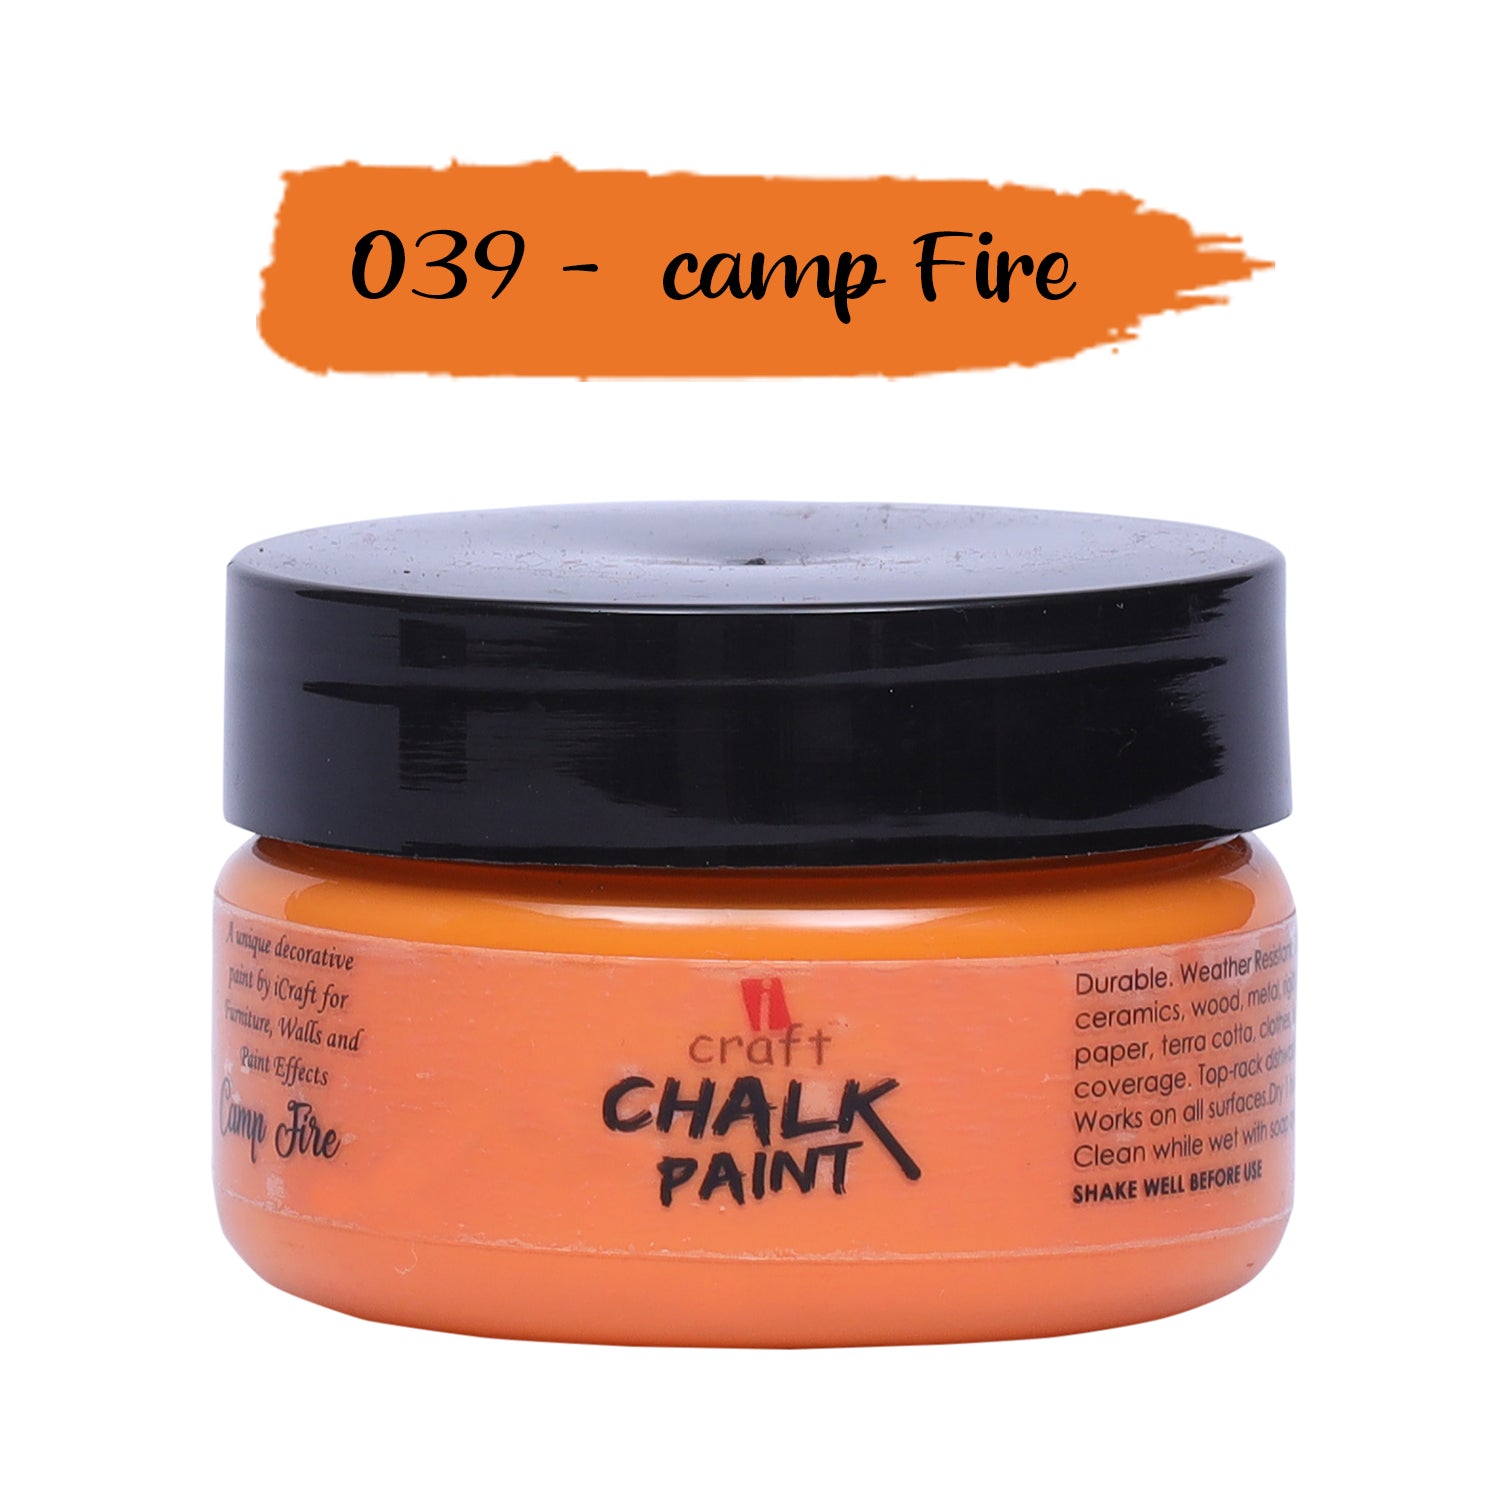 Chalk Paint - Camp Fire